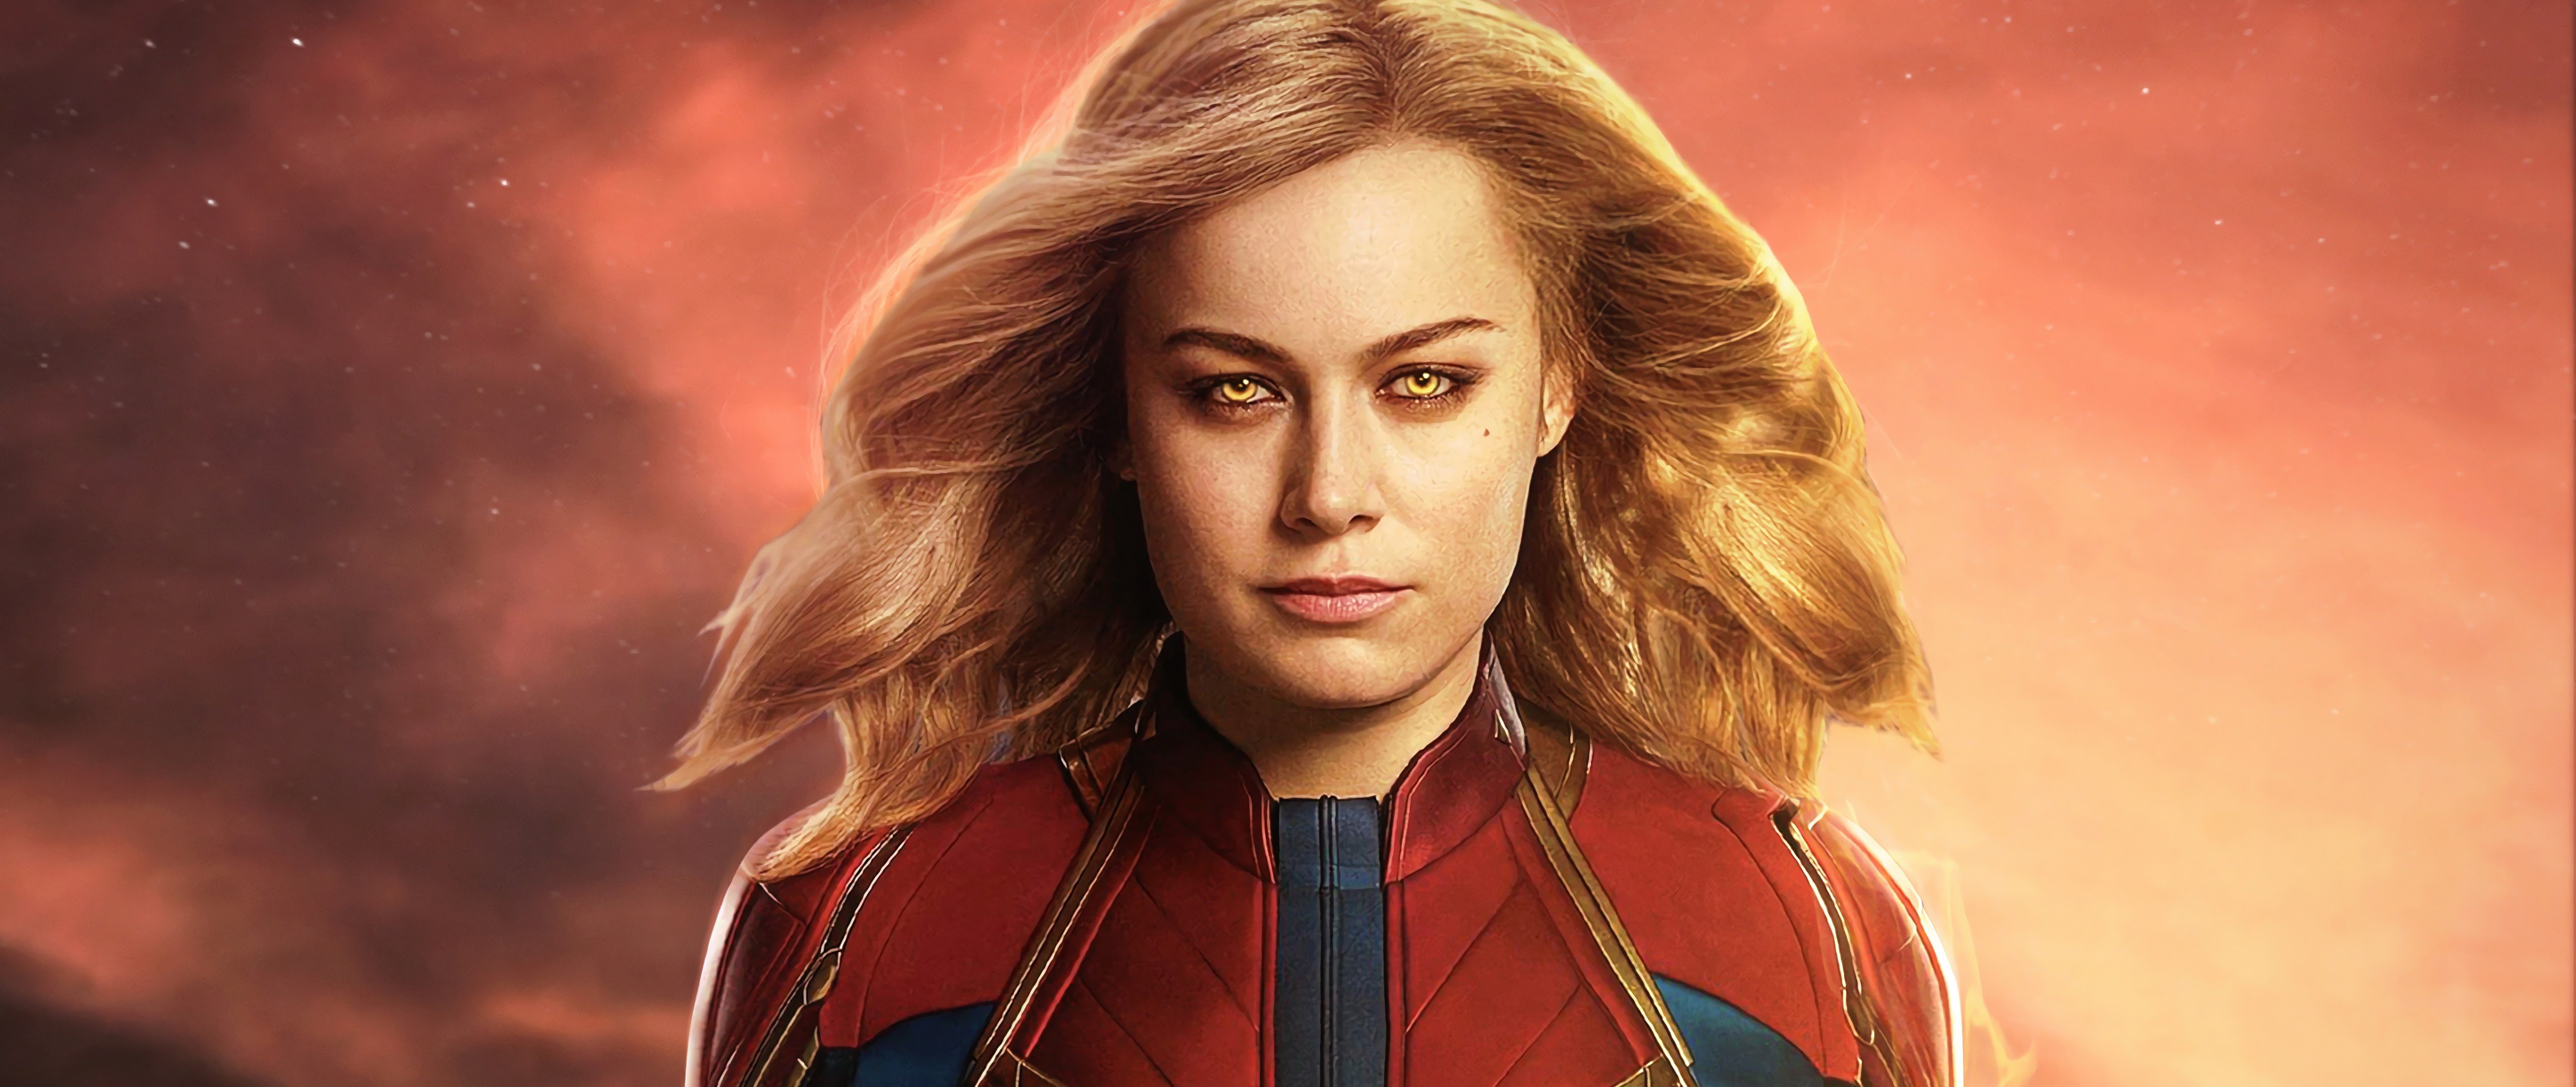 Brie Larson 2018 Captain Marvel Artwork Wallpapers